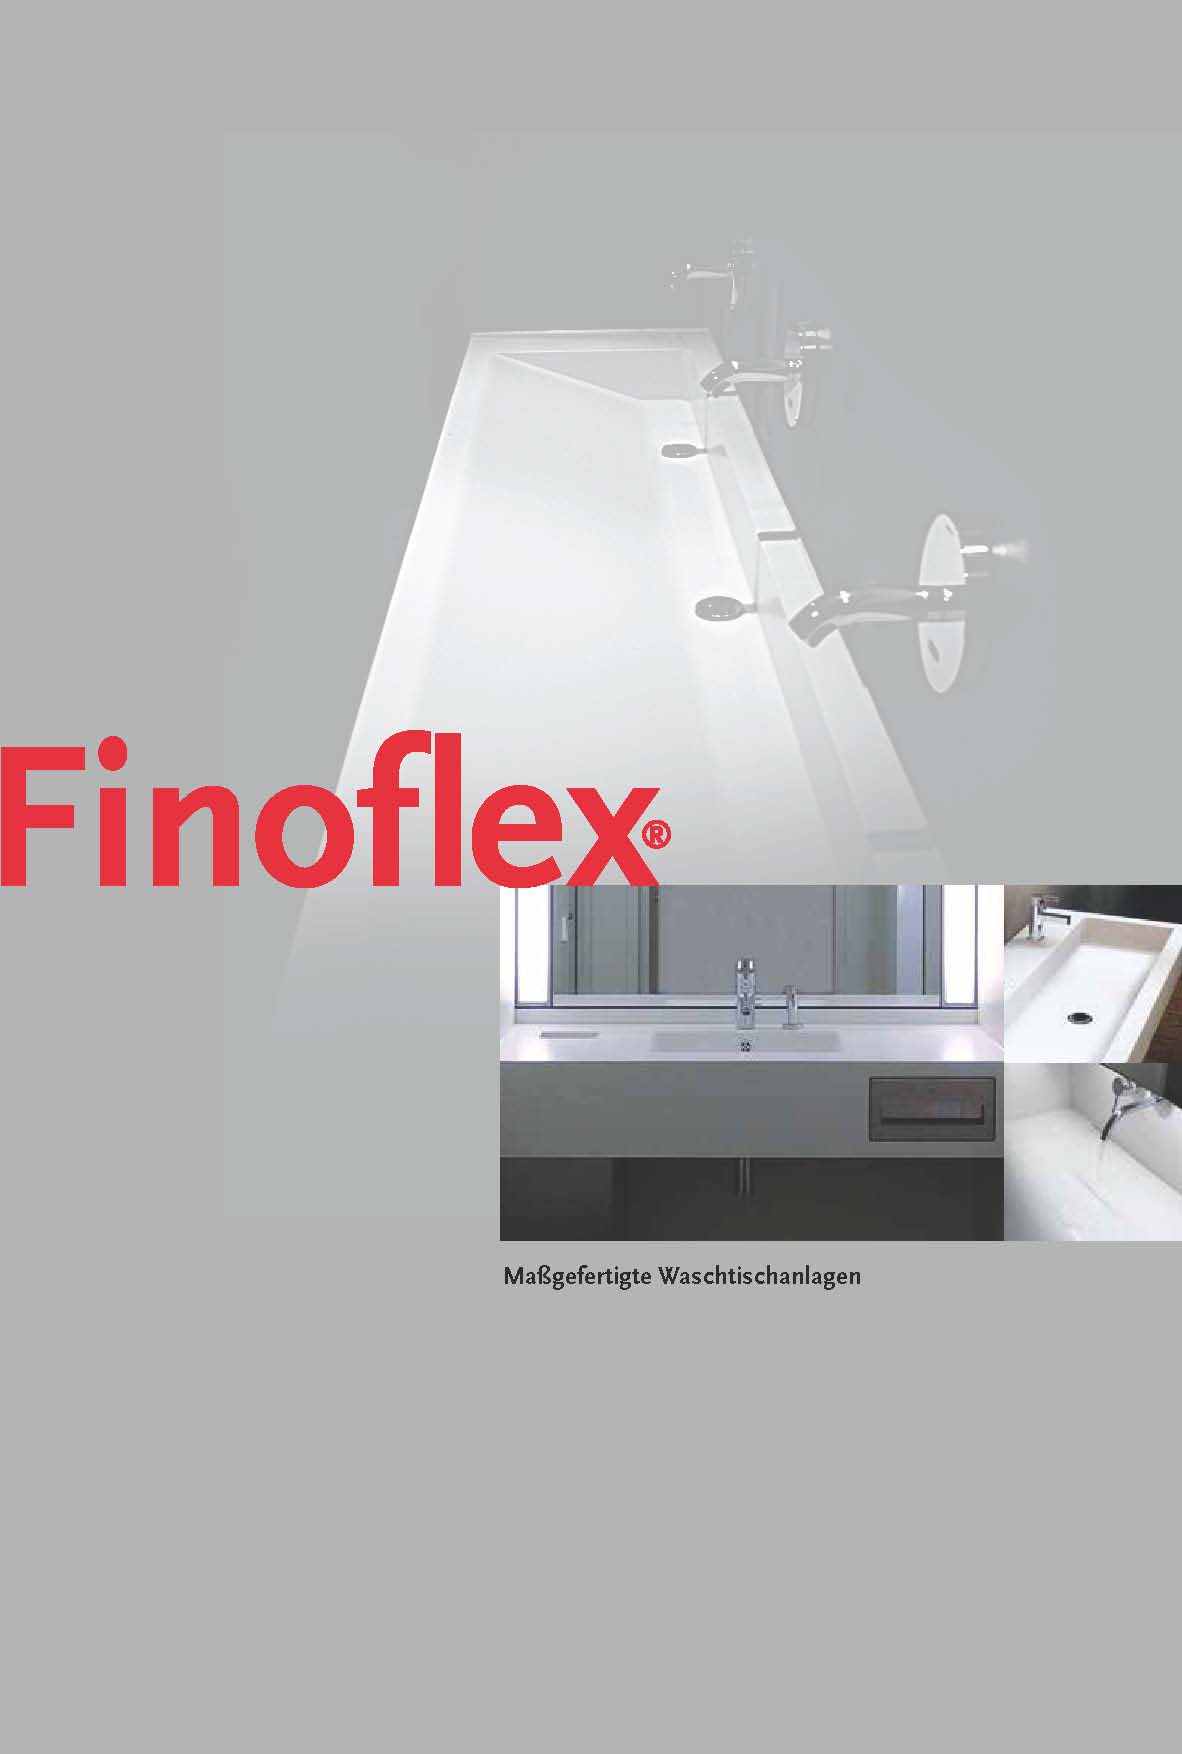 Finoflex Waschtische und Waschrinnen nach Maß